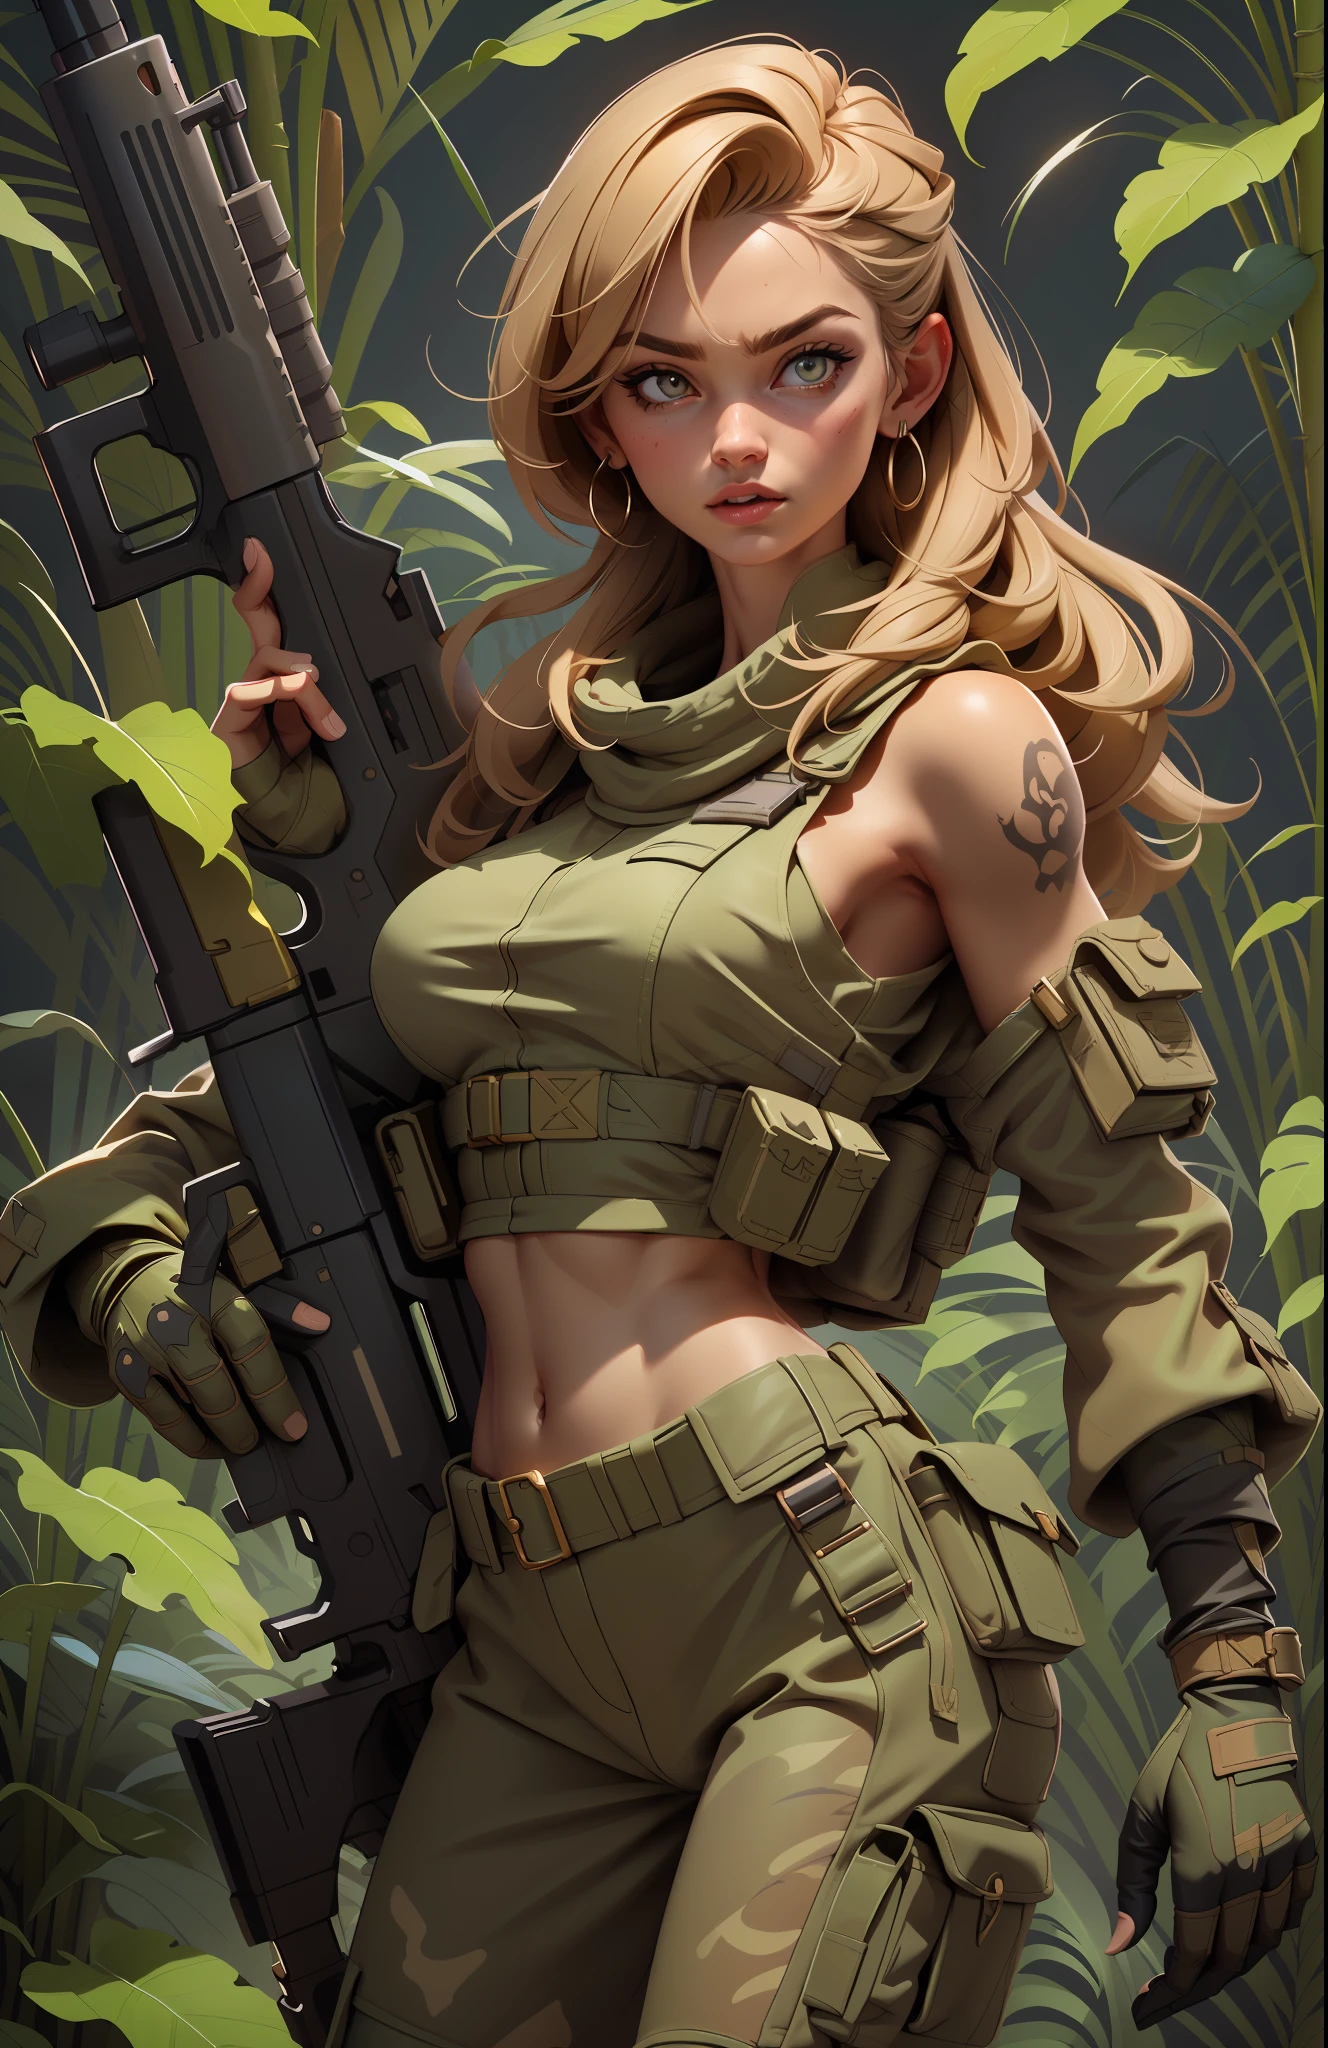 ทหารหญิงที่งดงามและกล้าหาญ, พอดีกับร่างกาย, เสื้อครอปทหาร, ไหล่เปลือย, ผมบลอนด์เข้ม, แขนสัก, ถือปืนใหญ่, วิ่งอยู่ในป่า, ใบหน้าที่มีรายละเอียดครบถ้วน,  ฆ่าตา, รายละเอียดสูง, เหมือนจริง, คุณภาพของภาพถ่าย, คุณภาพสูง,  (photoเหมือนจริง:1.4), มีรายละเอียดสูง, ผลงานชิ้นเอก, เงาคุณภาพสูง,